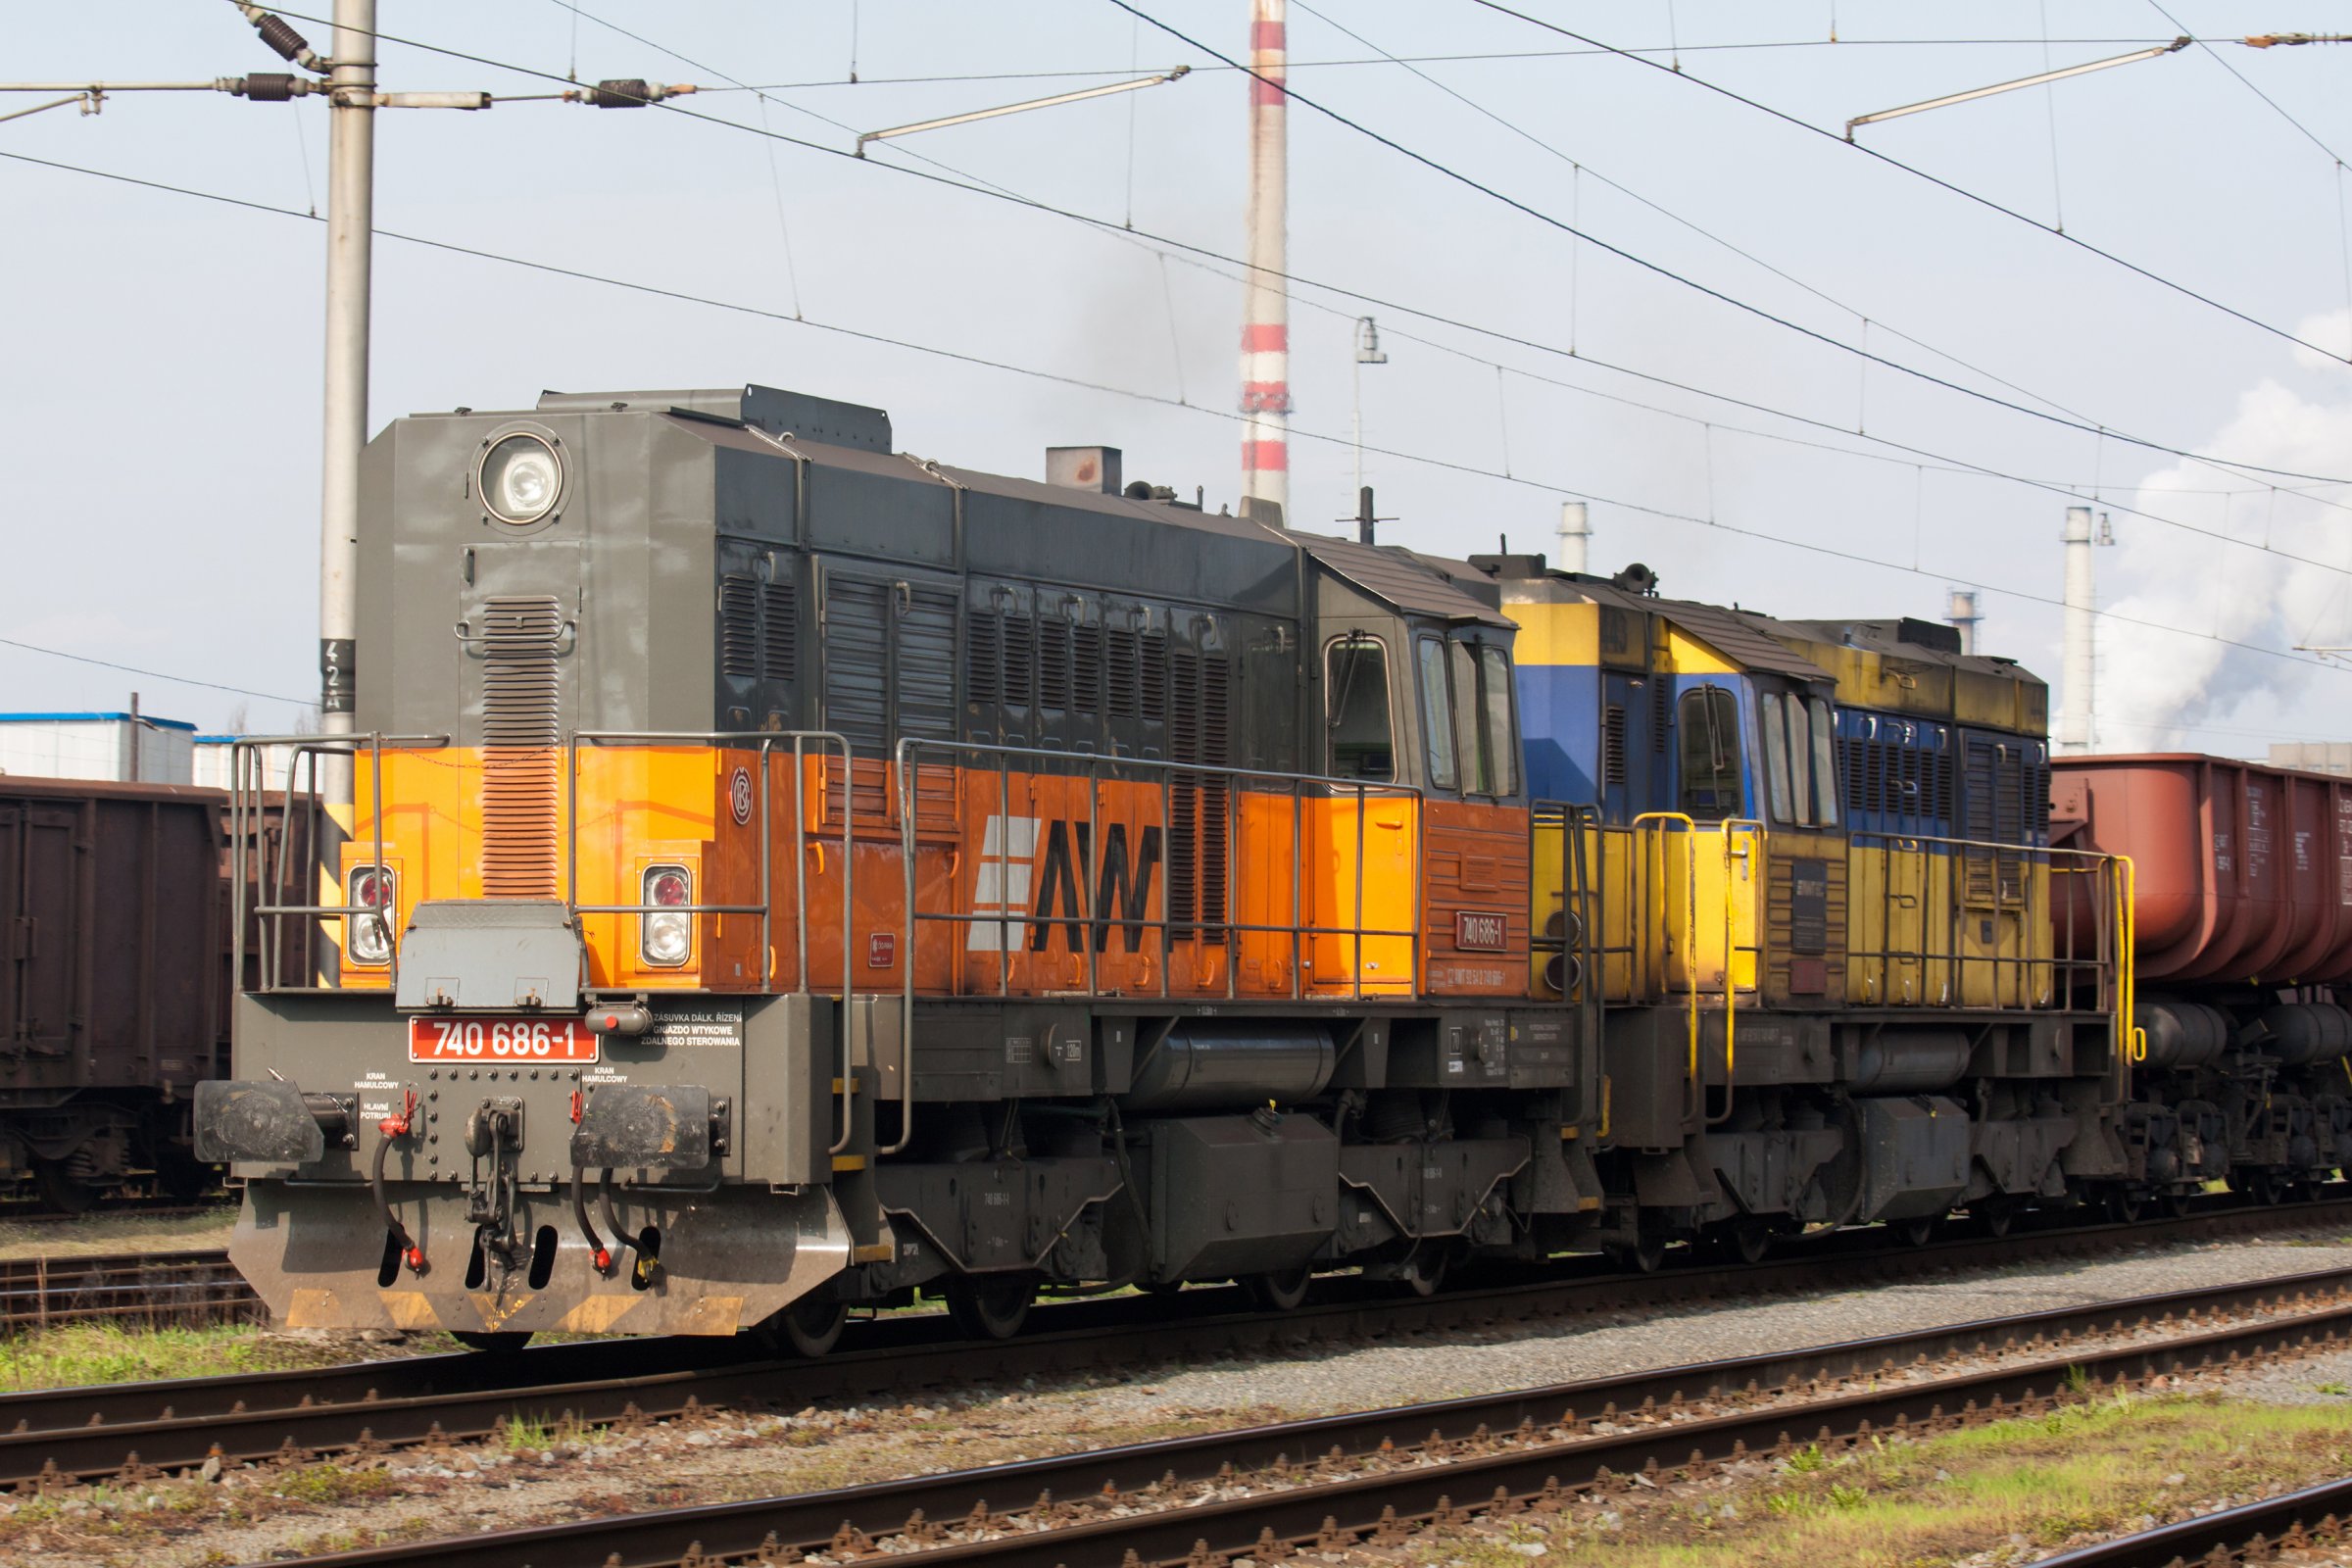 Motorová lokomotiva 740.686, Ostrava (1.4.2014) – Rebius / Shutterstock